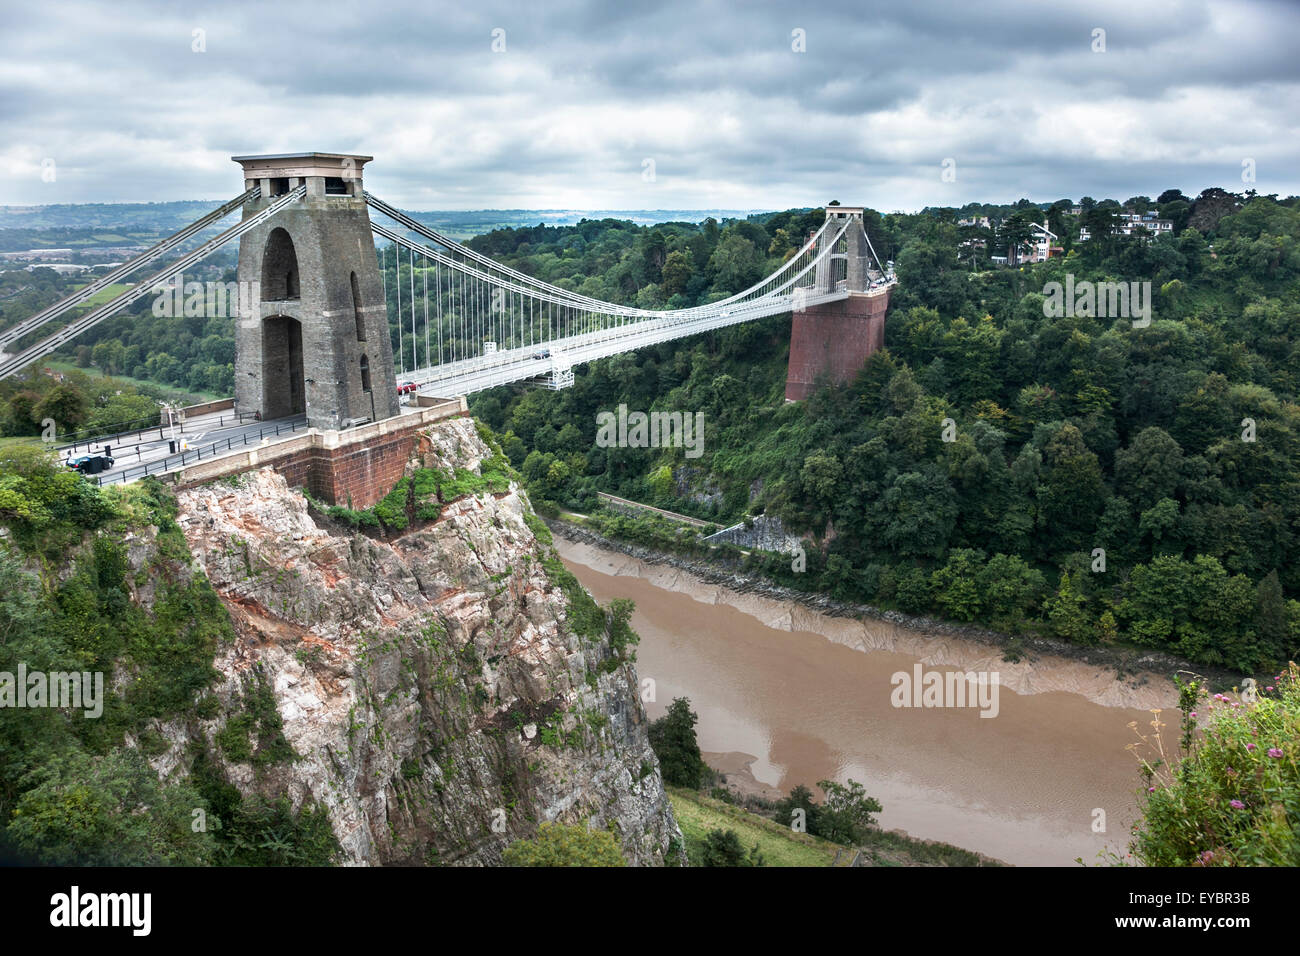 Clifton Suspension Bridge in Bristol, UK Stock Photo